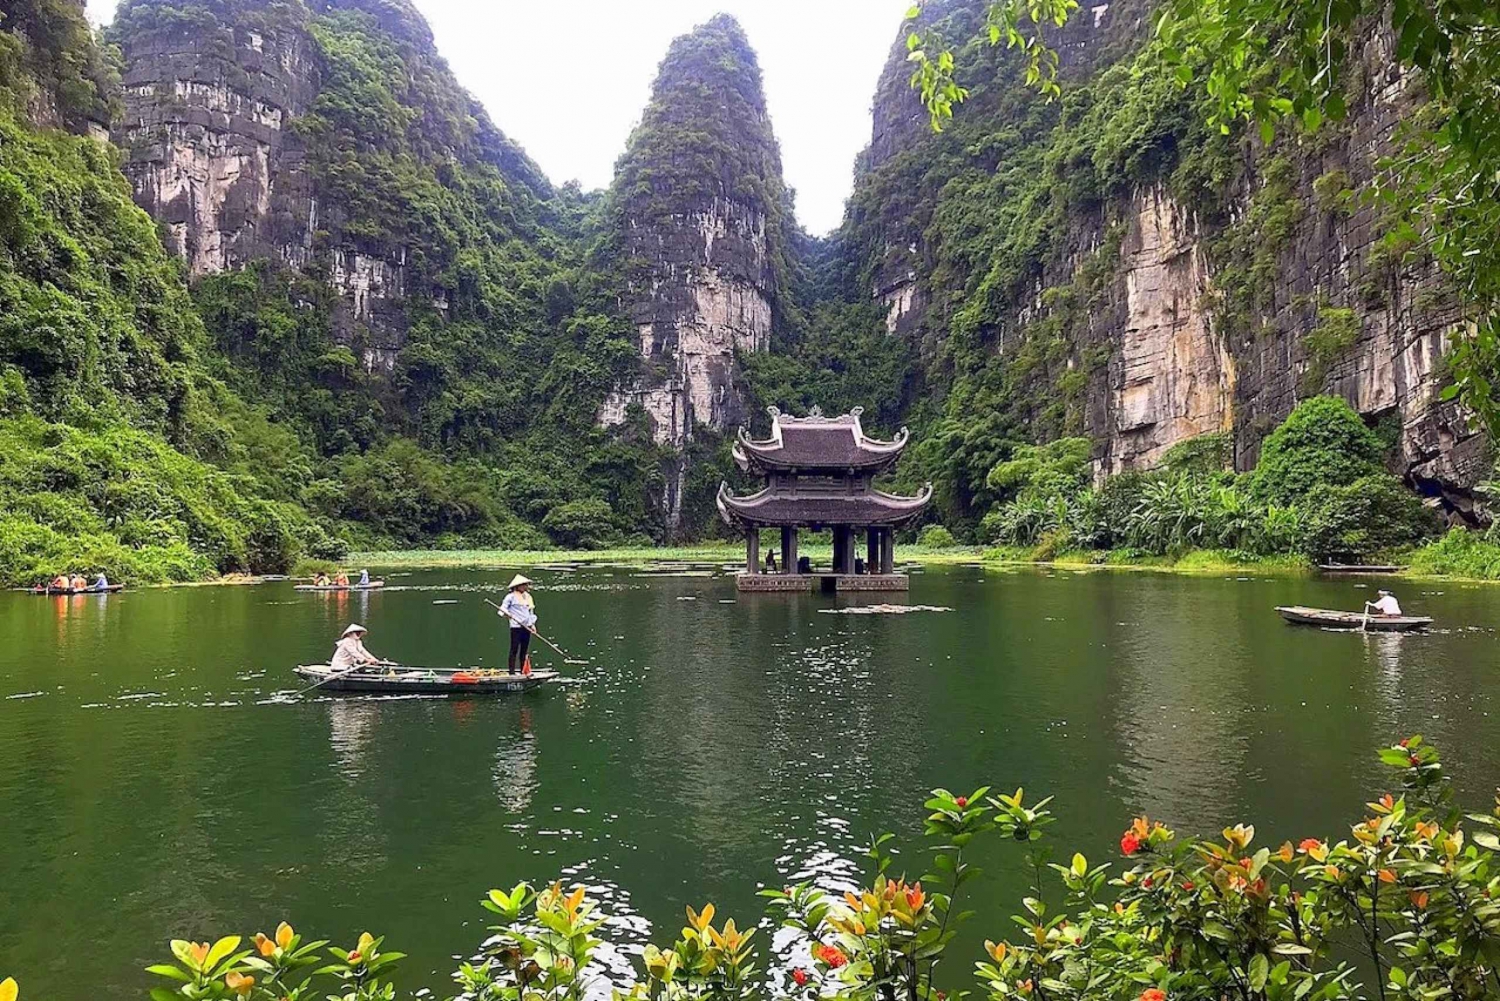 From Hanoi: Ninh Binh, Trang An, Bai Dinh, and Mua Cave Trip